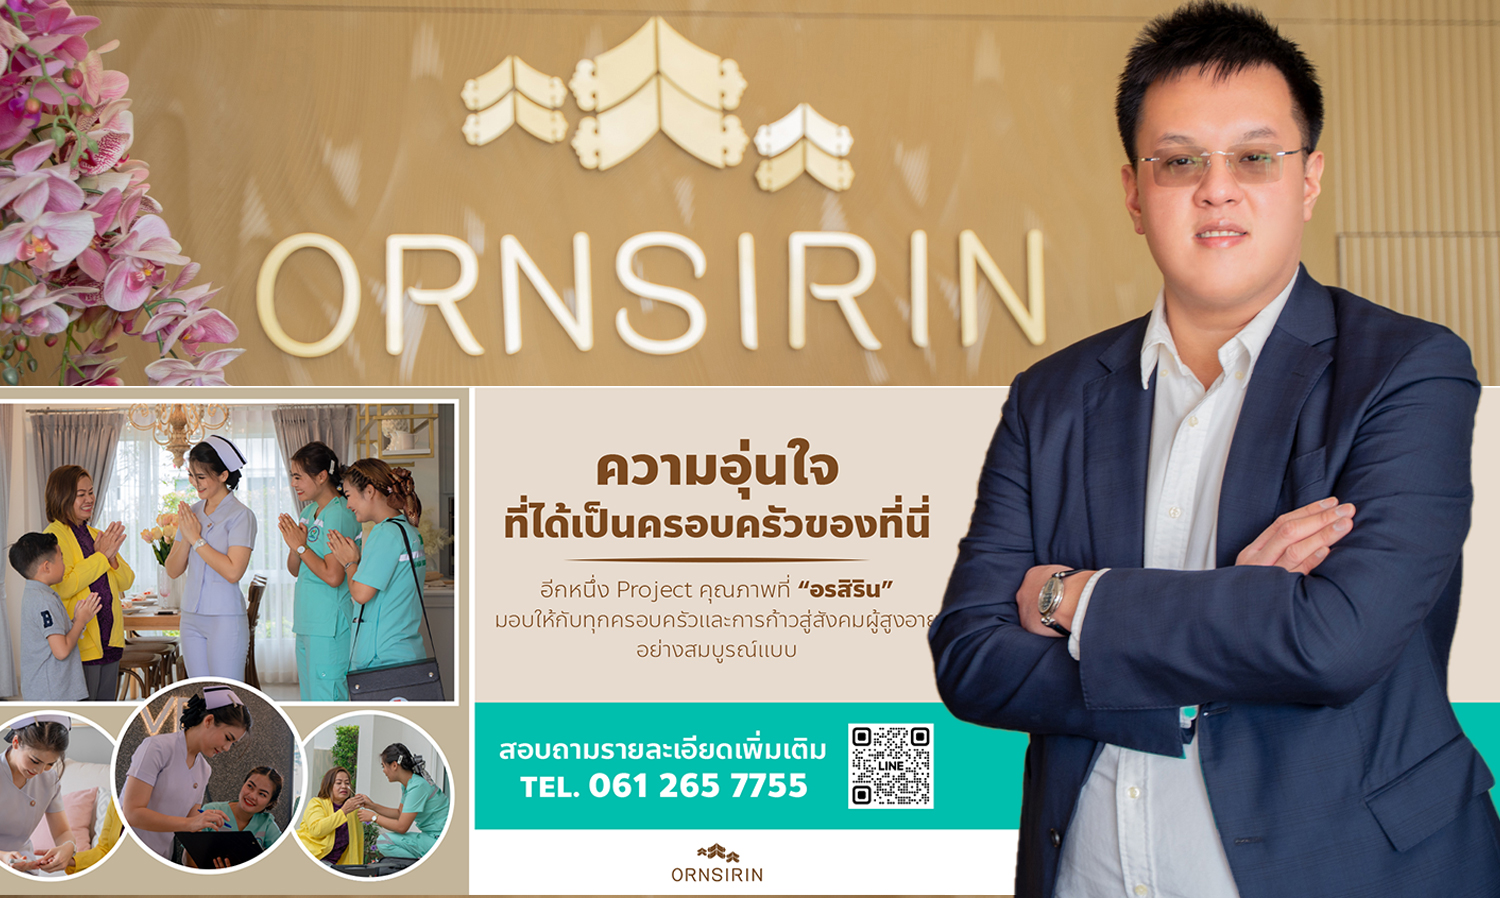 อรสิริน จับมือพันธมิตร ผุดโปรเจค Ornsirin Health Hub ยกระดับการดูแลสุขภาพลูกบ้าน ก้าวสู่สังคมผู้สูงอายุอย่างสมบูรณ์แบบ